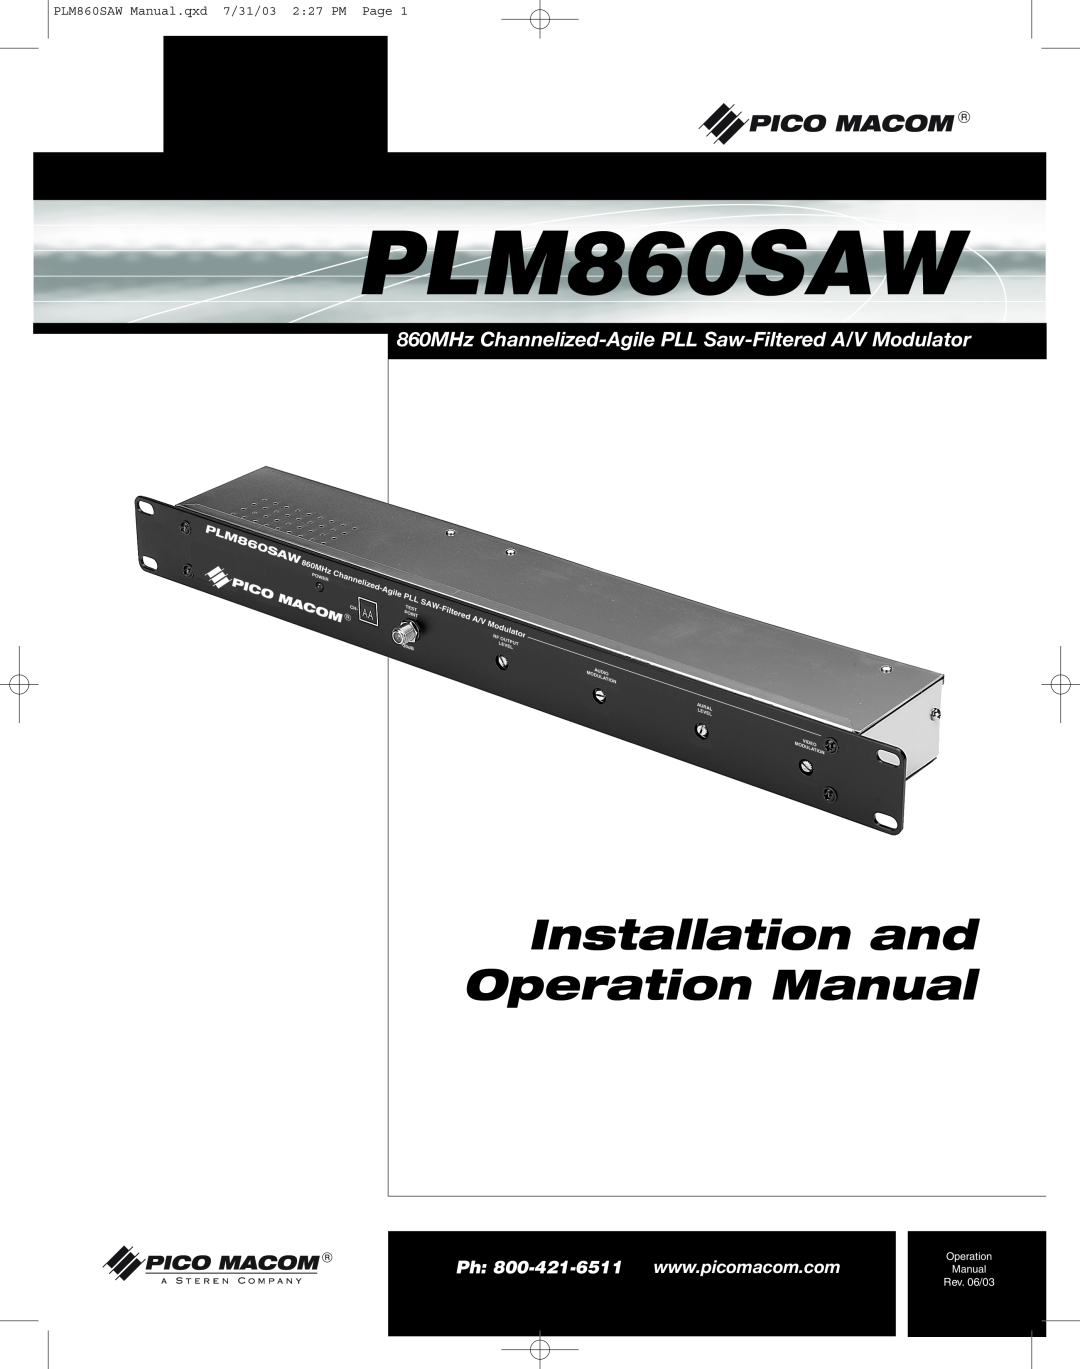 Pico Macom PFAM860SAW operation manual PLM860SAW Manual.qxd 7/31/03 2 27 PM Page, Rev. 06/03, Operation 